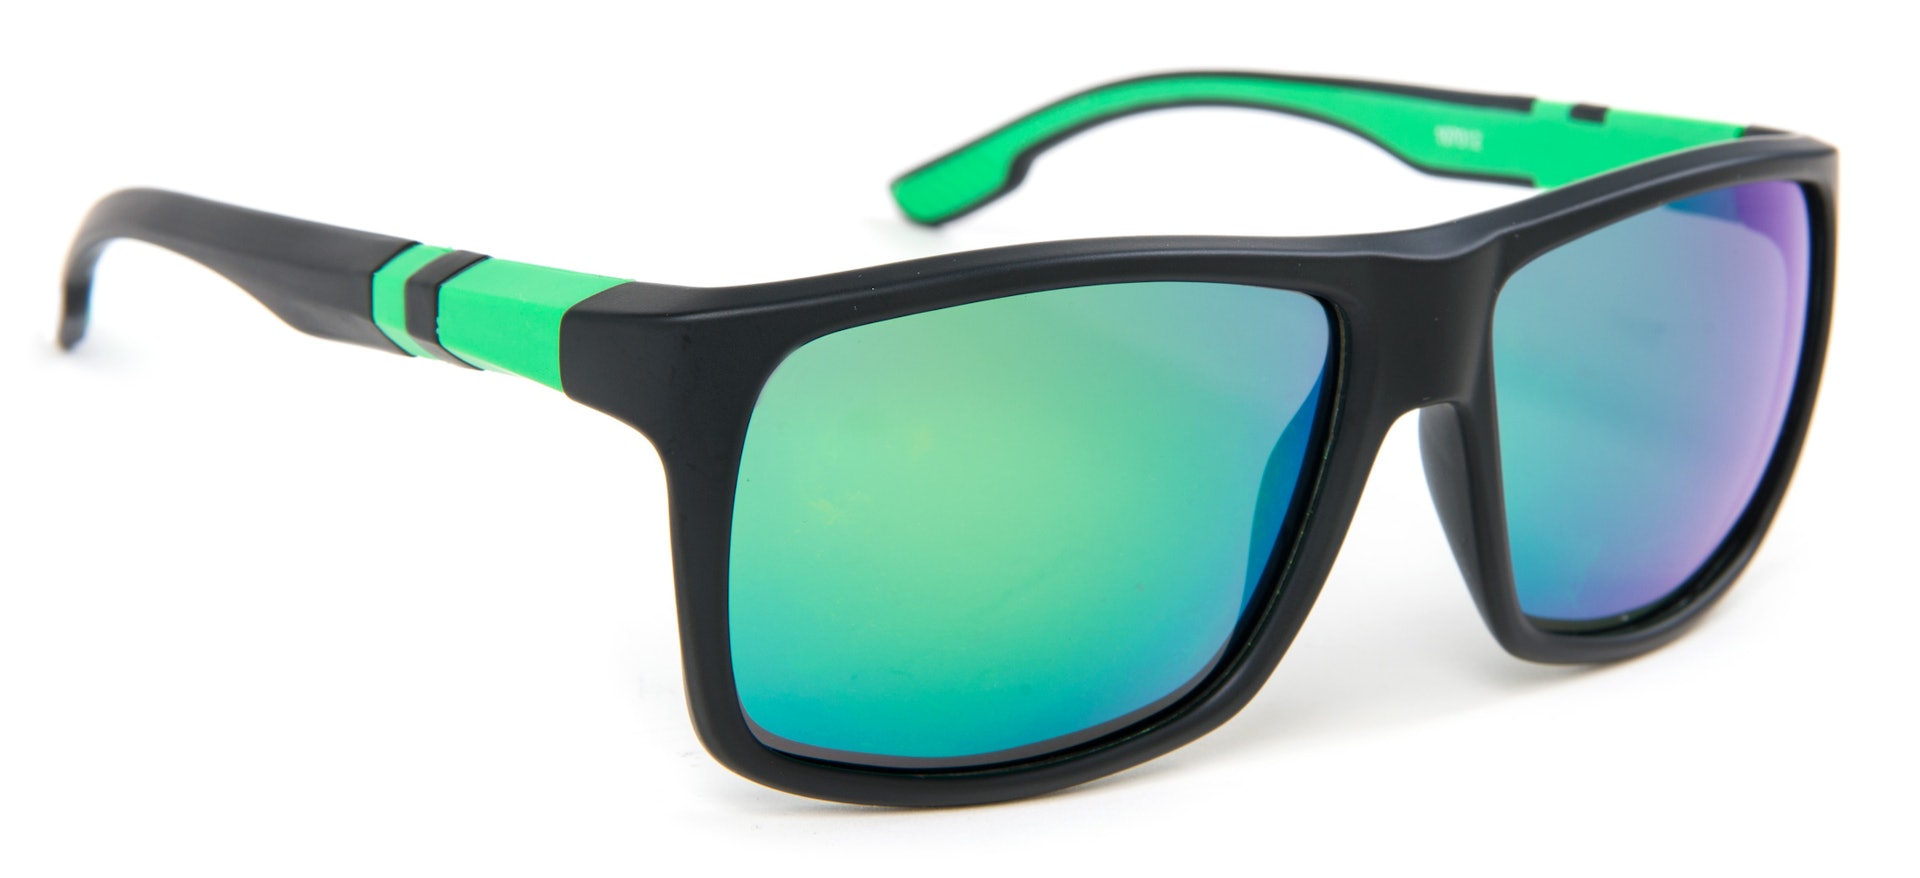 LPX Sunglasses - Grey Lens (bild 1 av 2)